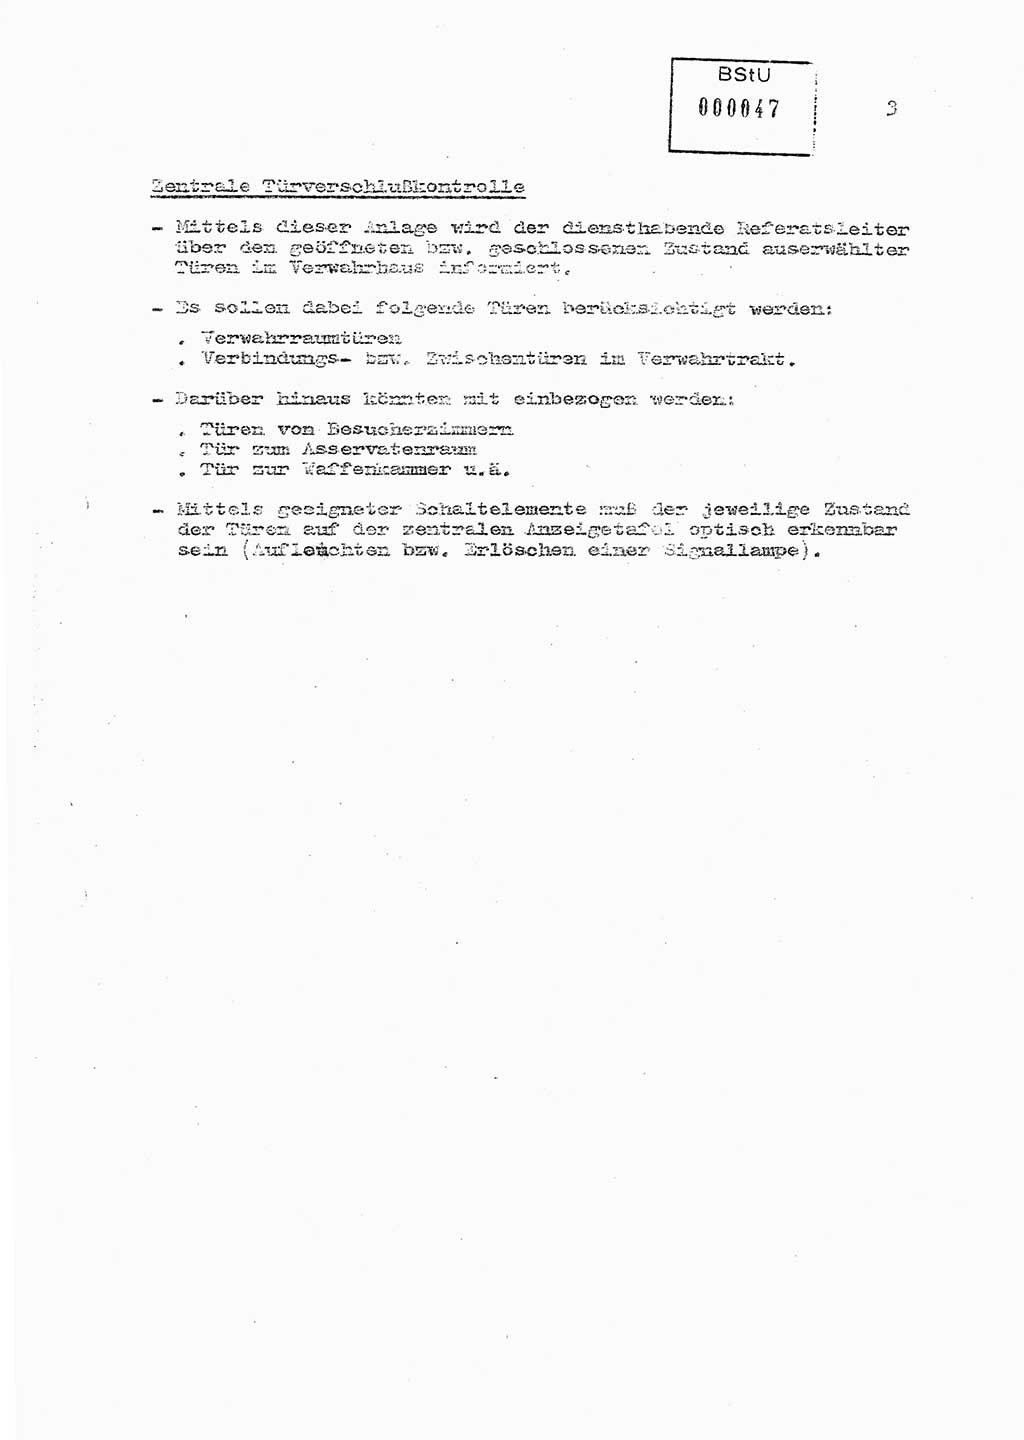 Sicherungs- und Nachrichtentechnik in UHA [Untersuchungshaftanstalten, Ministerium für Staatssicherheit, Deutsche Demokratische Republik (DDR)], Abteilung (Abt.) ⅩⅣ, Berlin 1980, Seite 3 (Si.-NT UHA MfS DDR Abt. ⅩⅣ /80 1980, S. 3)